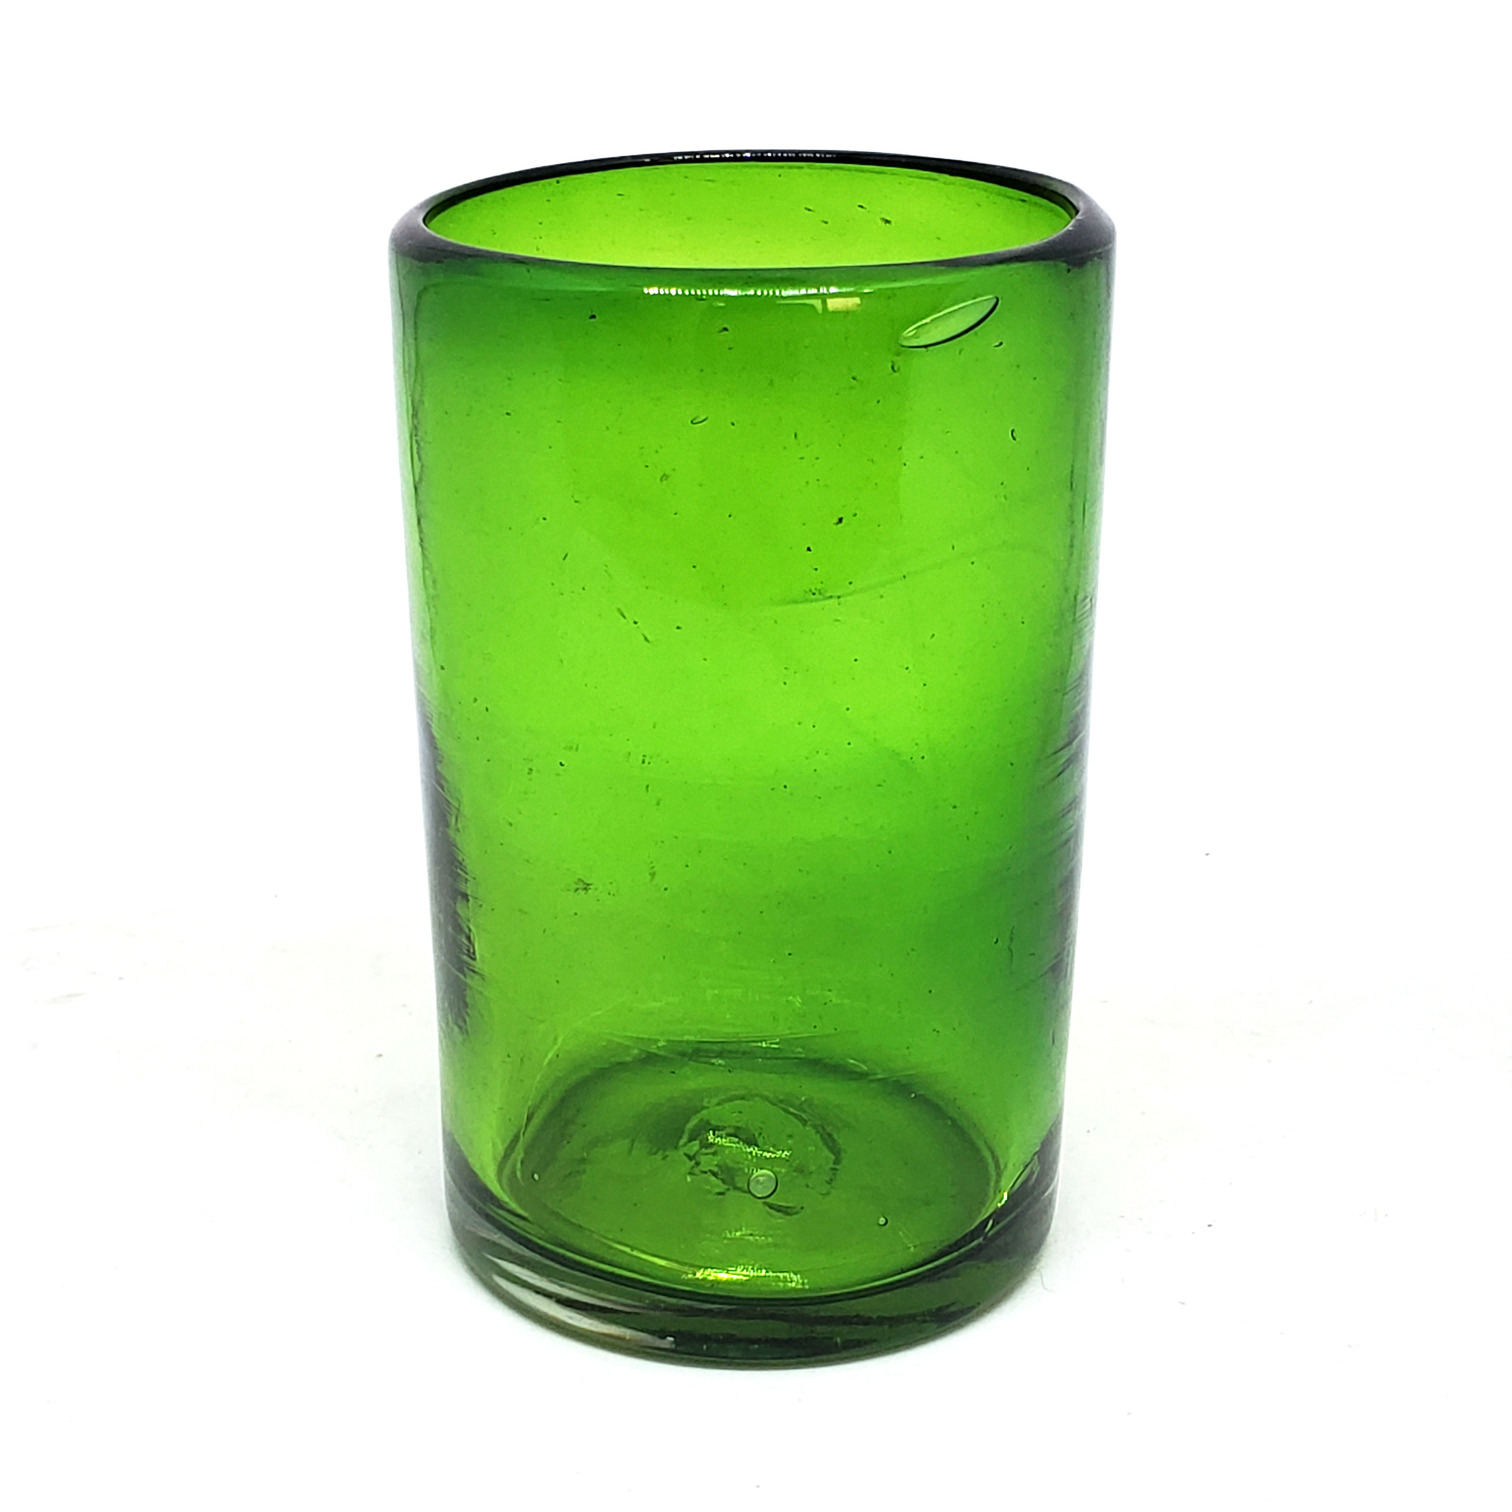 Ofertas / Juego de 6 vasos grandes color verde esmeralda / Éstos artesanales vasos le darán un toque clásico a su bebida favorita.